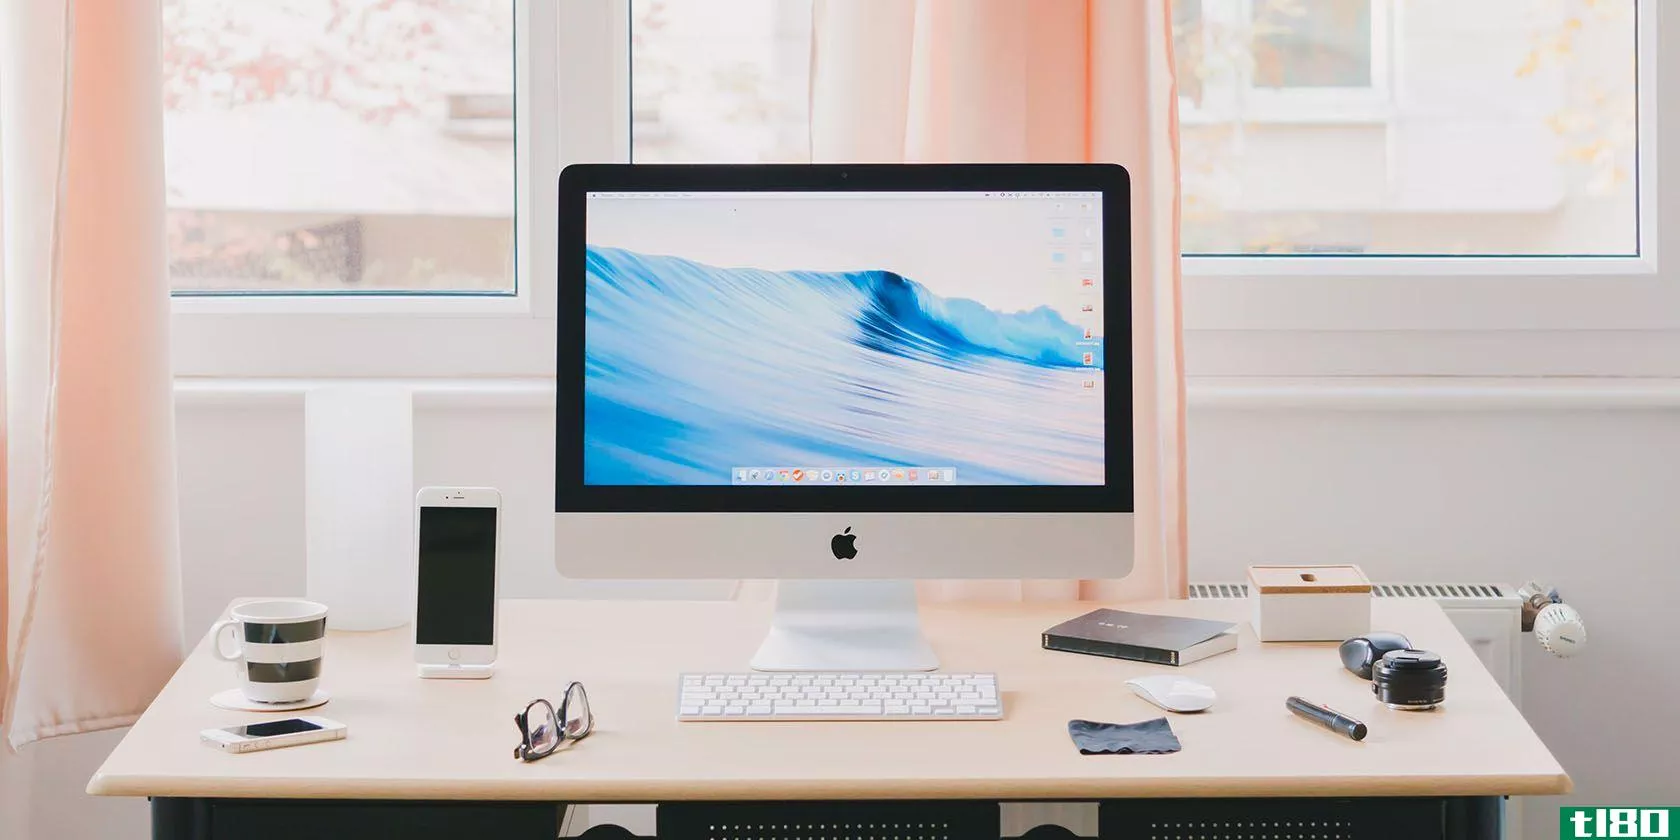 iMac on a desk.